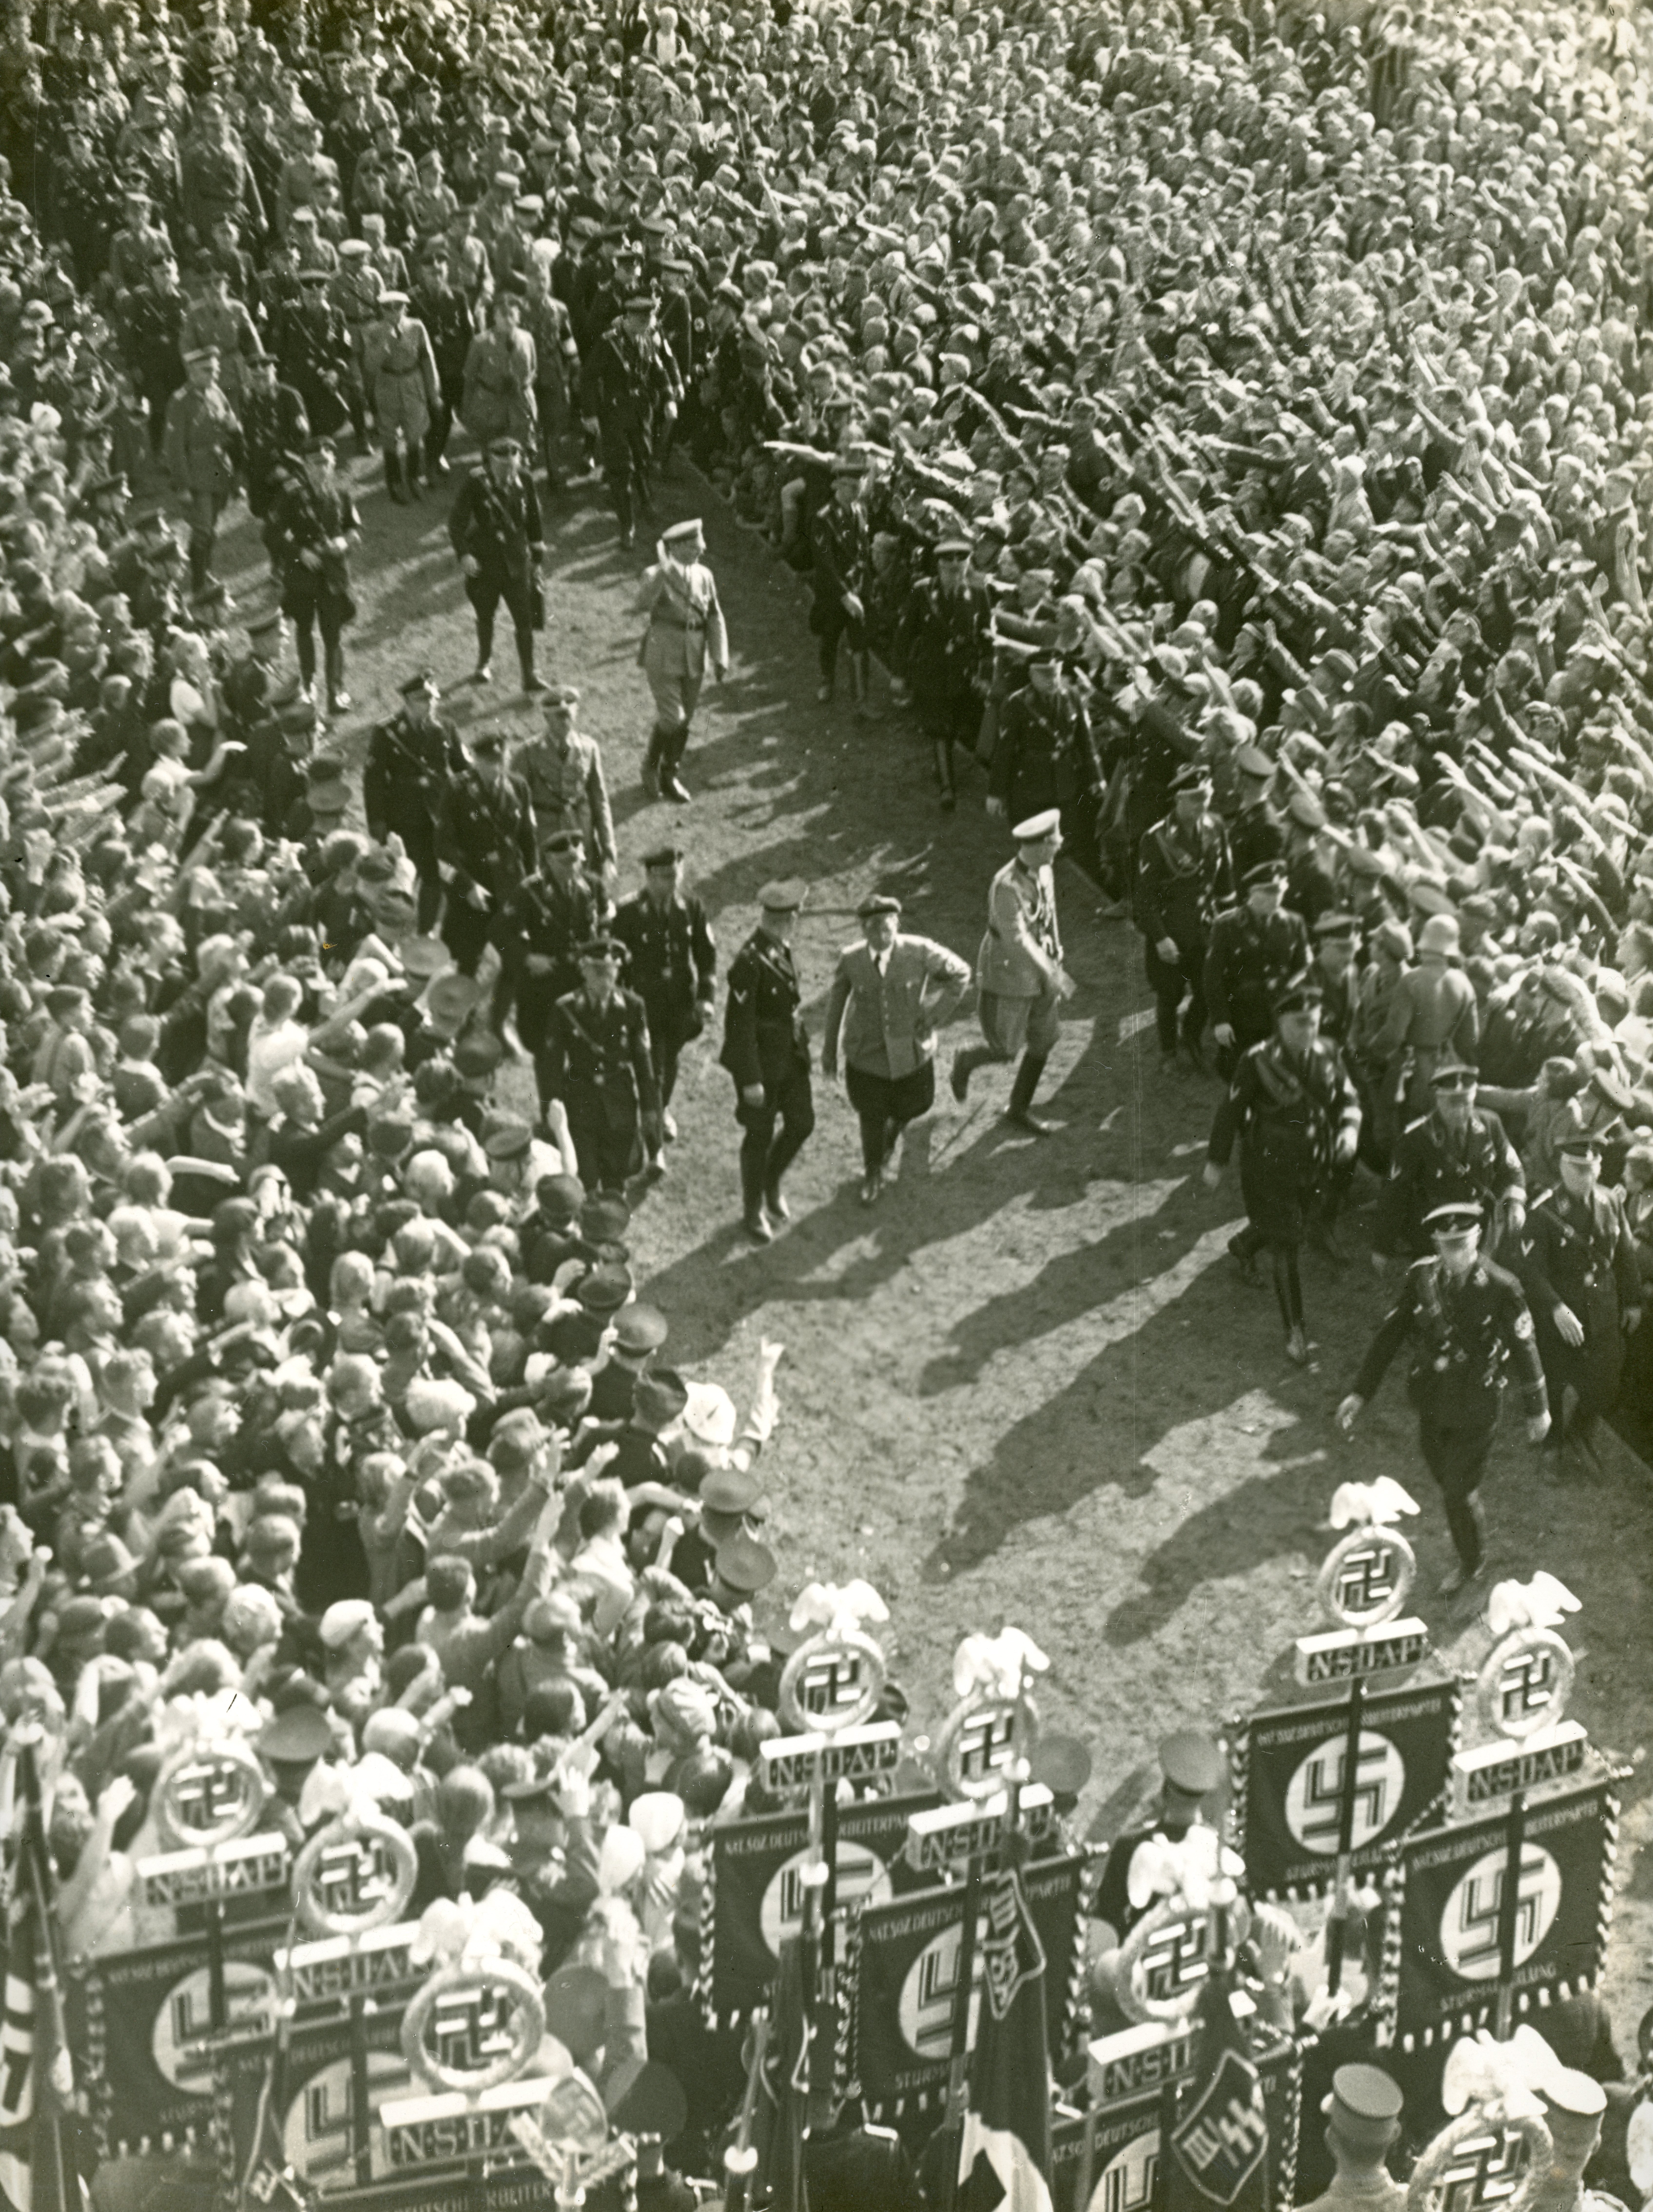 1935 Hitler walking through a crowd